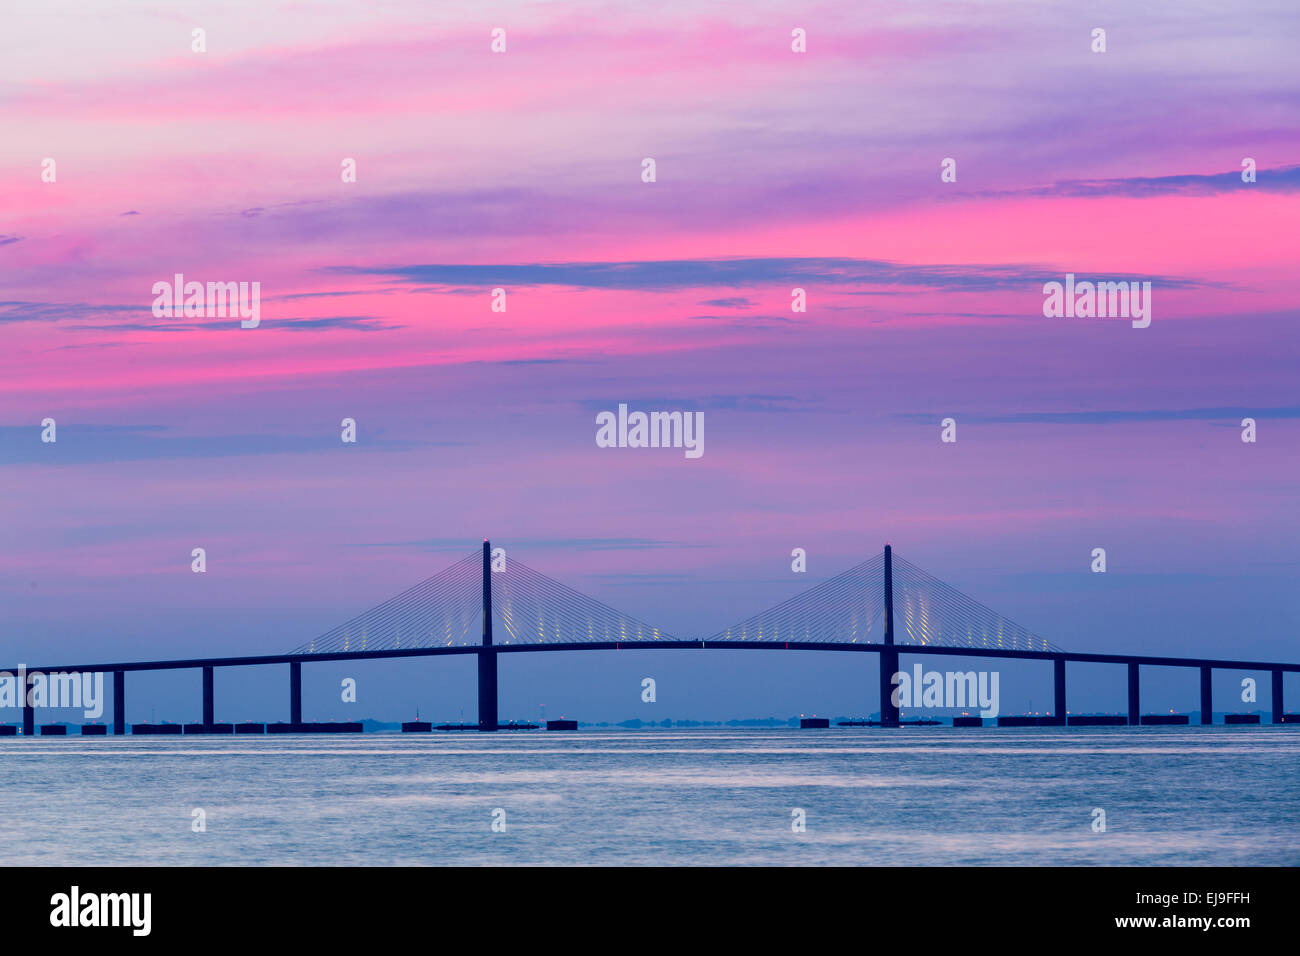 Sunshine Skyway Bridge at dawn Stock Photo